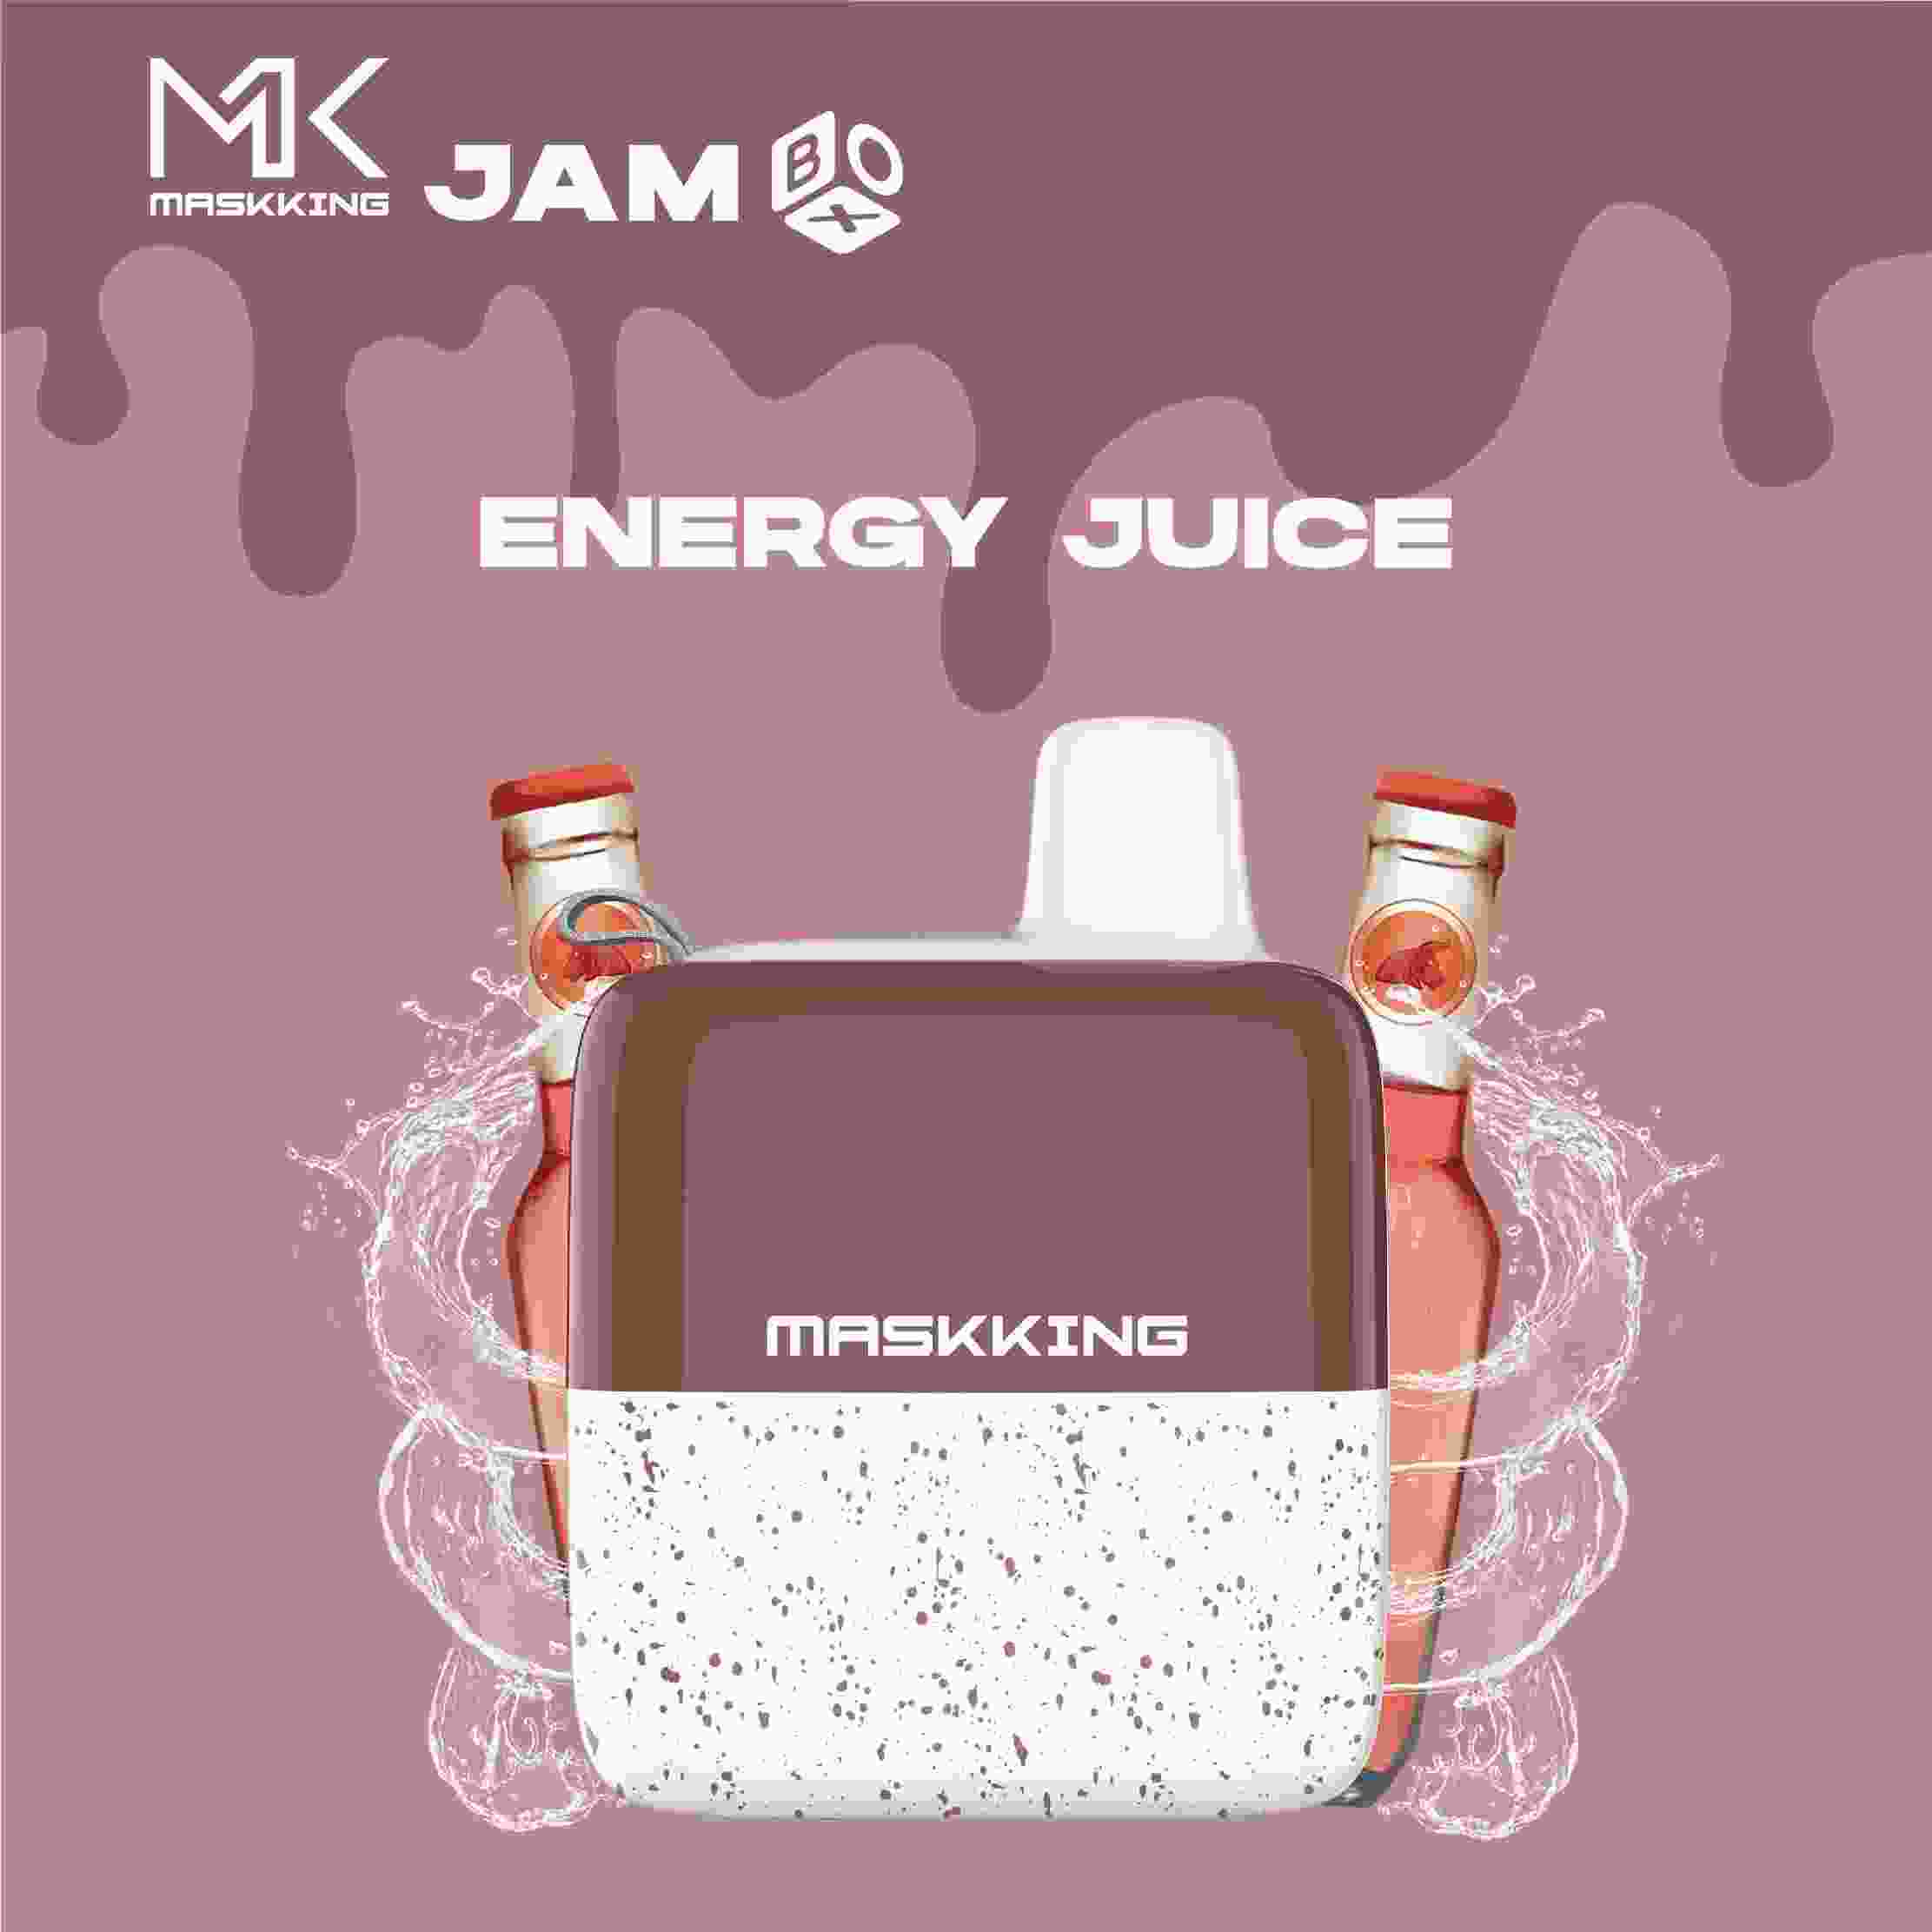 Energy Juice – Maskking Jam Box